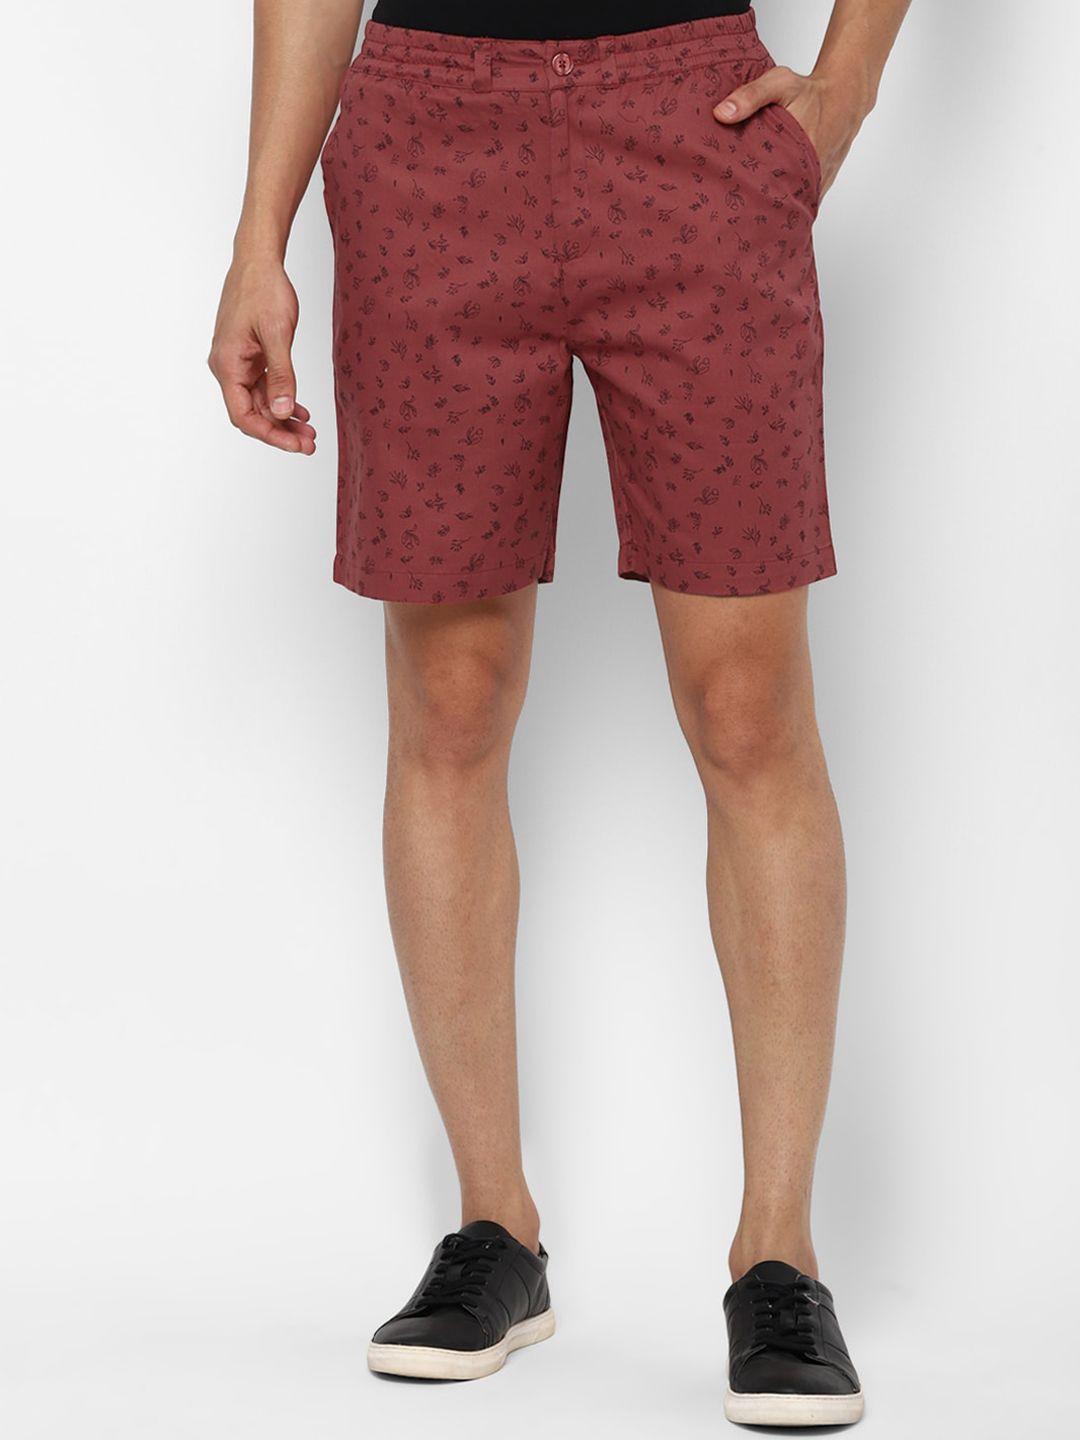 forever-21-men-red-floral-printed-regular-shorts